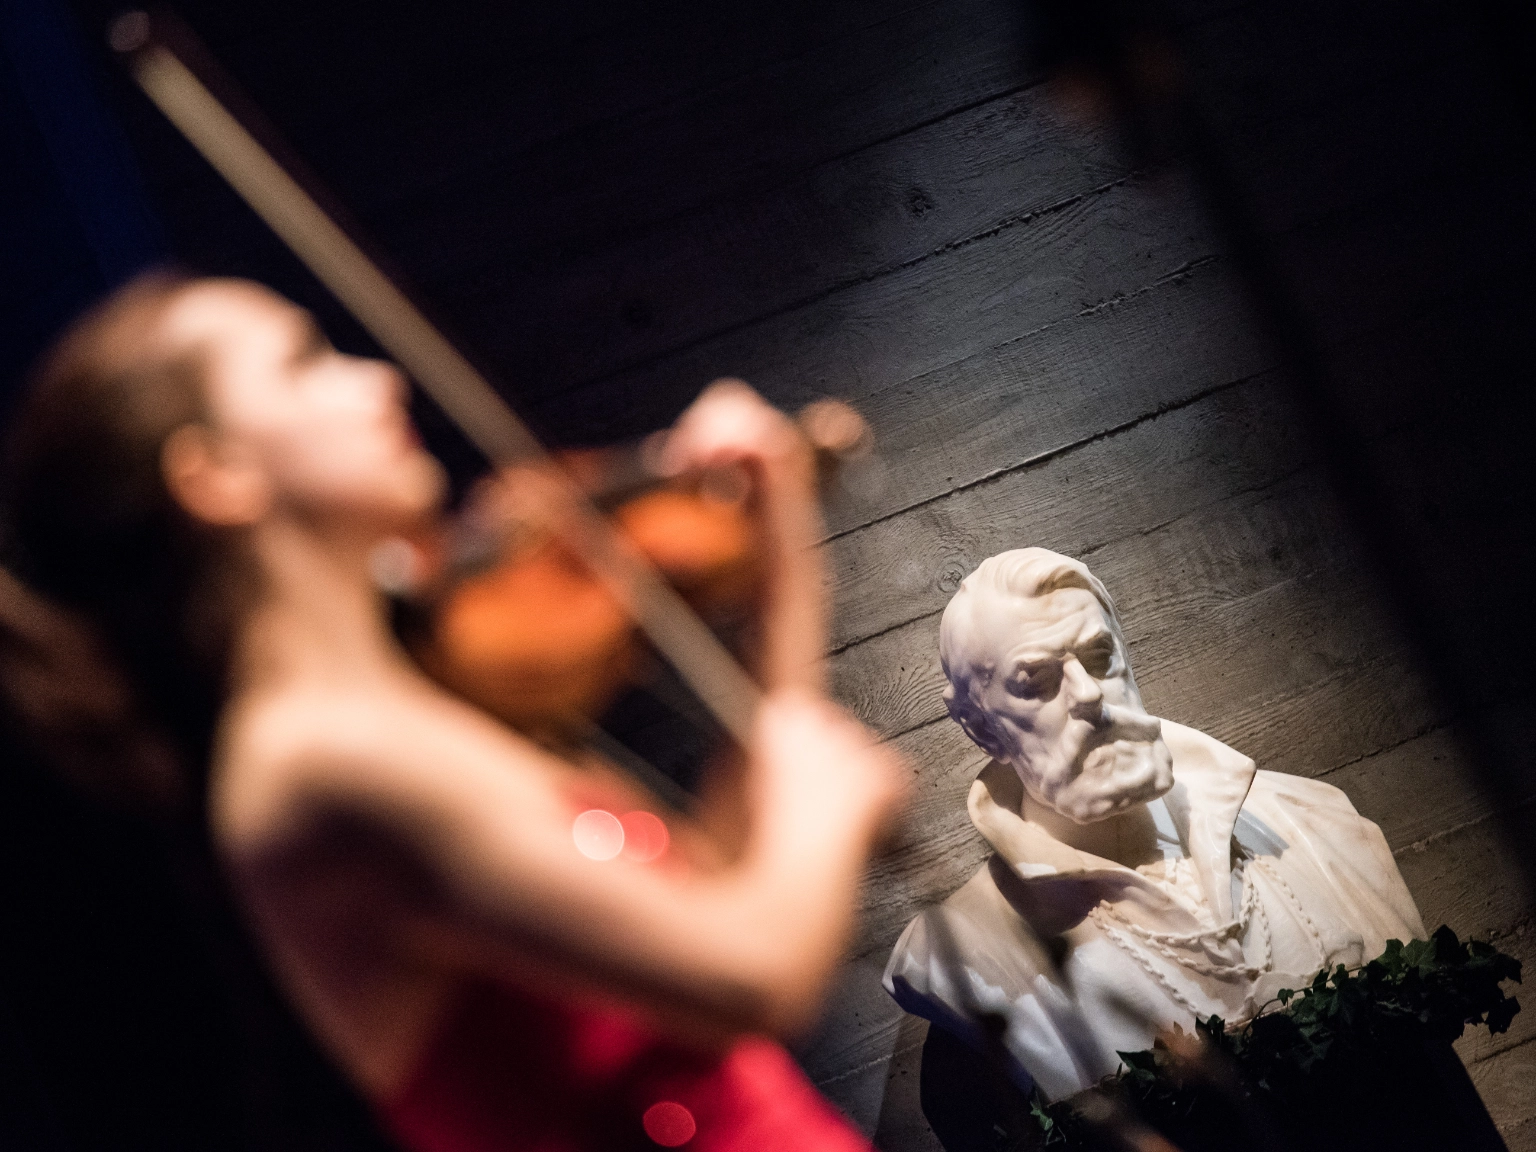 Impression des Joseph Joachim Violinwettbewerbs 2015 – im Vordergrund ein junge Geigerin im roten Kleid, im Hintergrund die beleuchtete Büste Joseph Joachims